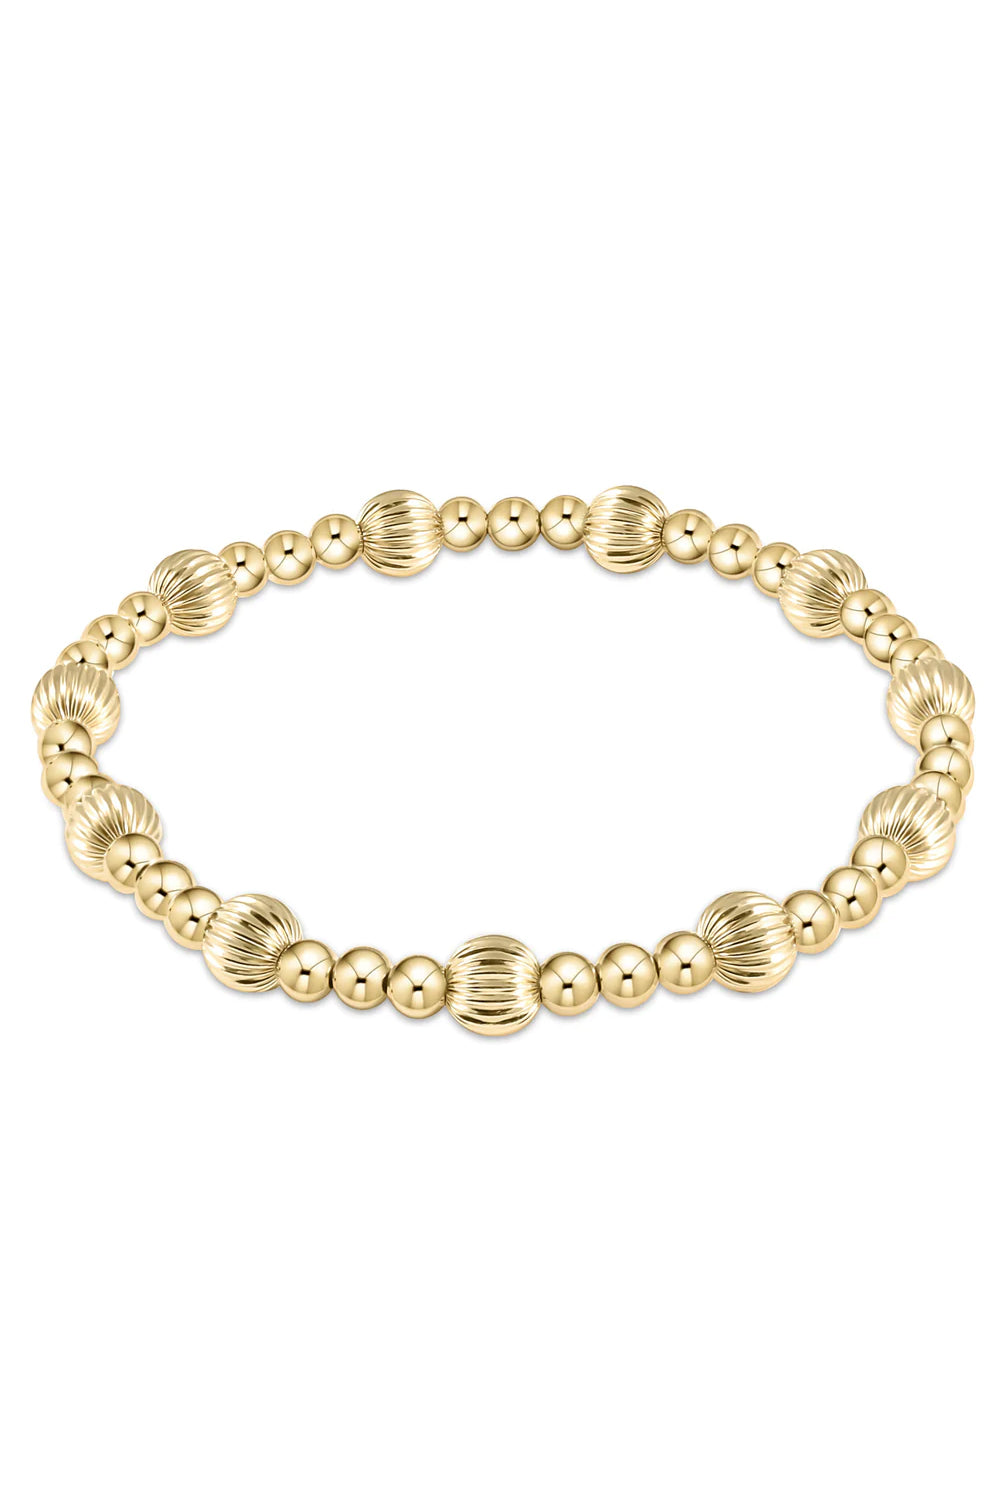 enewton: Dignity Sincerity Pattern 6mm Bead Bracelet - Gold | Makk Fashions